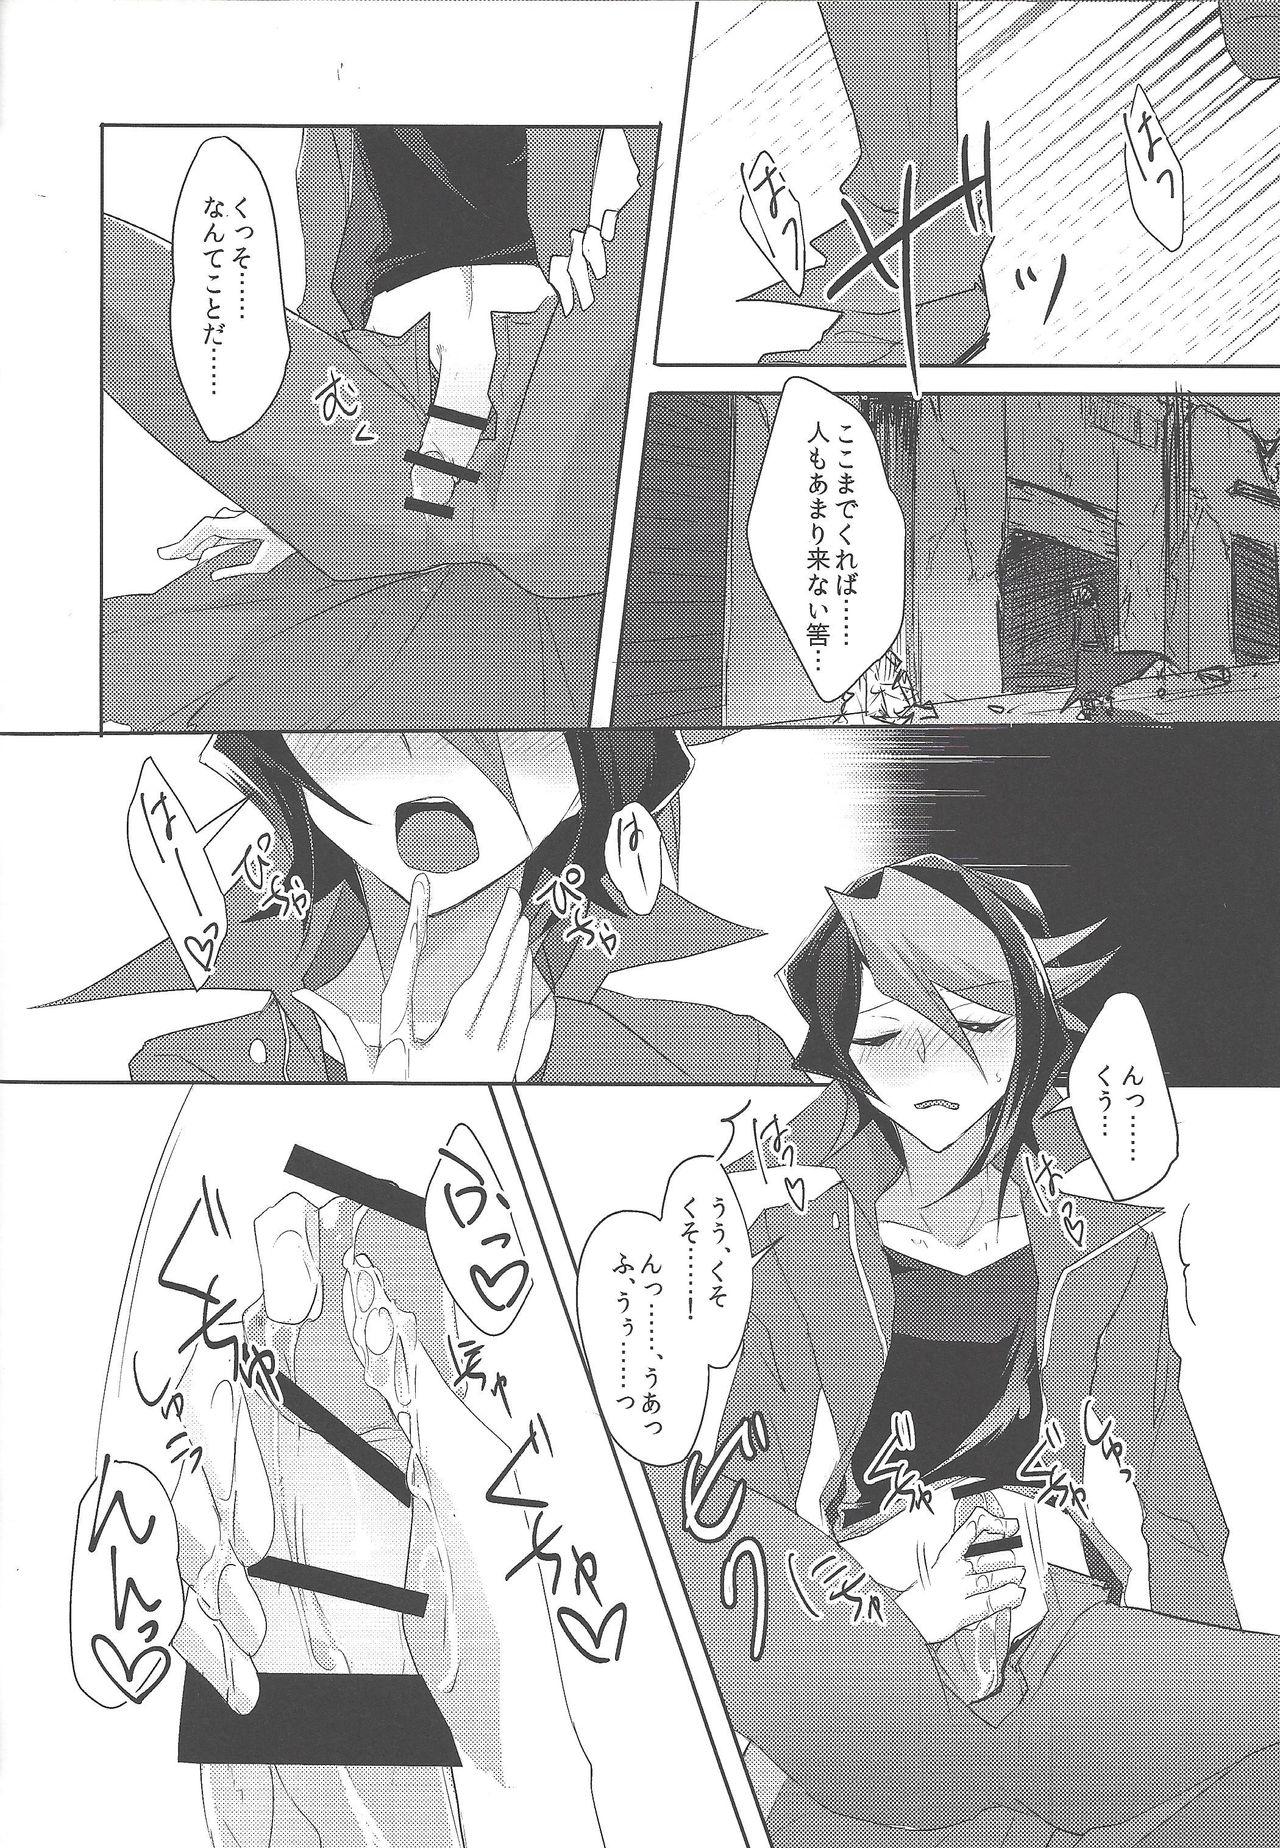 Uncensored Kimi to kokoro no risōkyō - Yu-gi-oh arc-v POV - Page 11